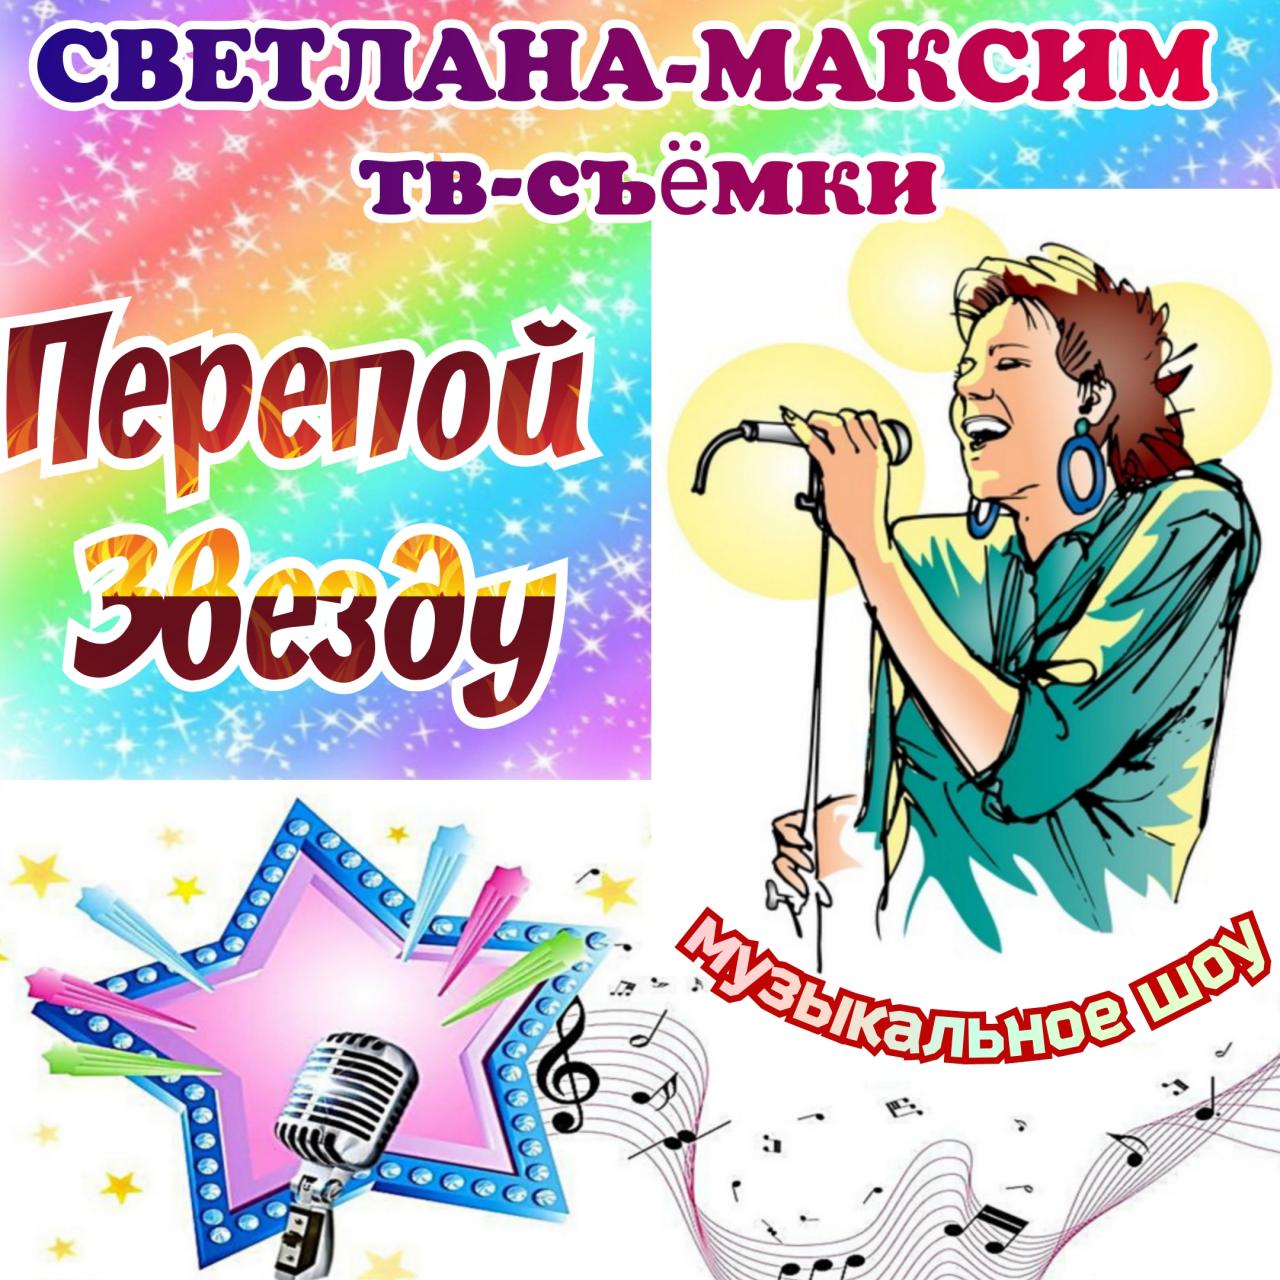 21, 22, 23, 24 апреля музыкальное шоу "ПЕРЕПОЙ ЗВЕЗДУ".